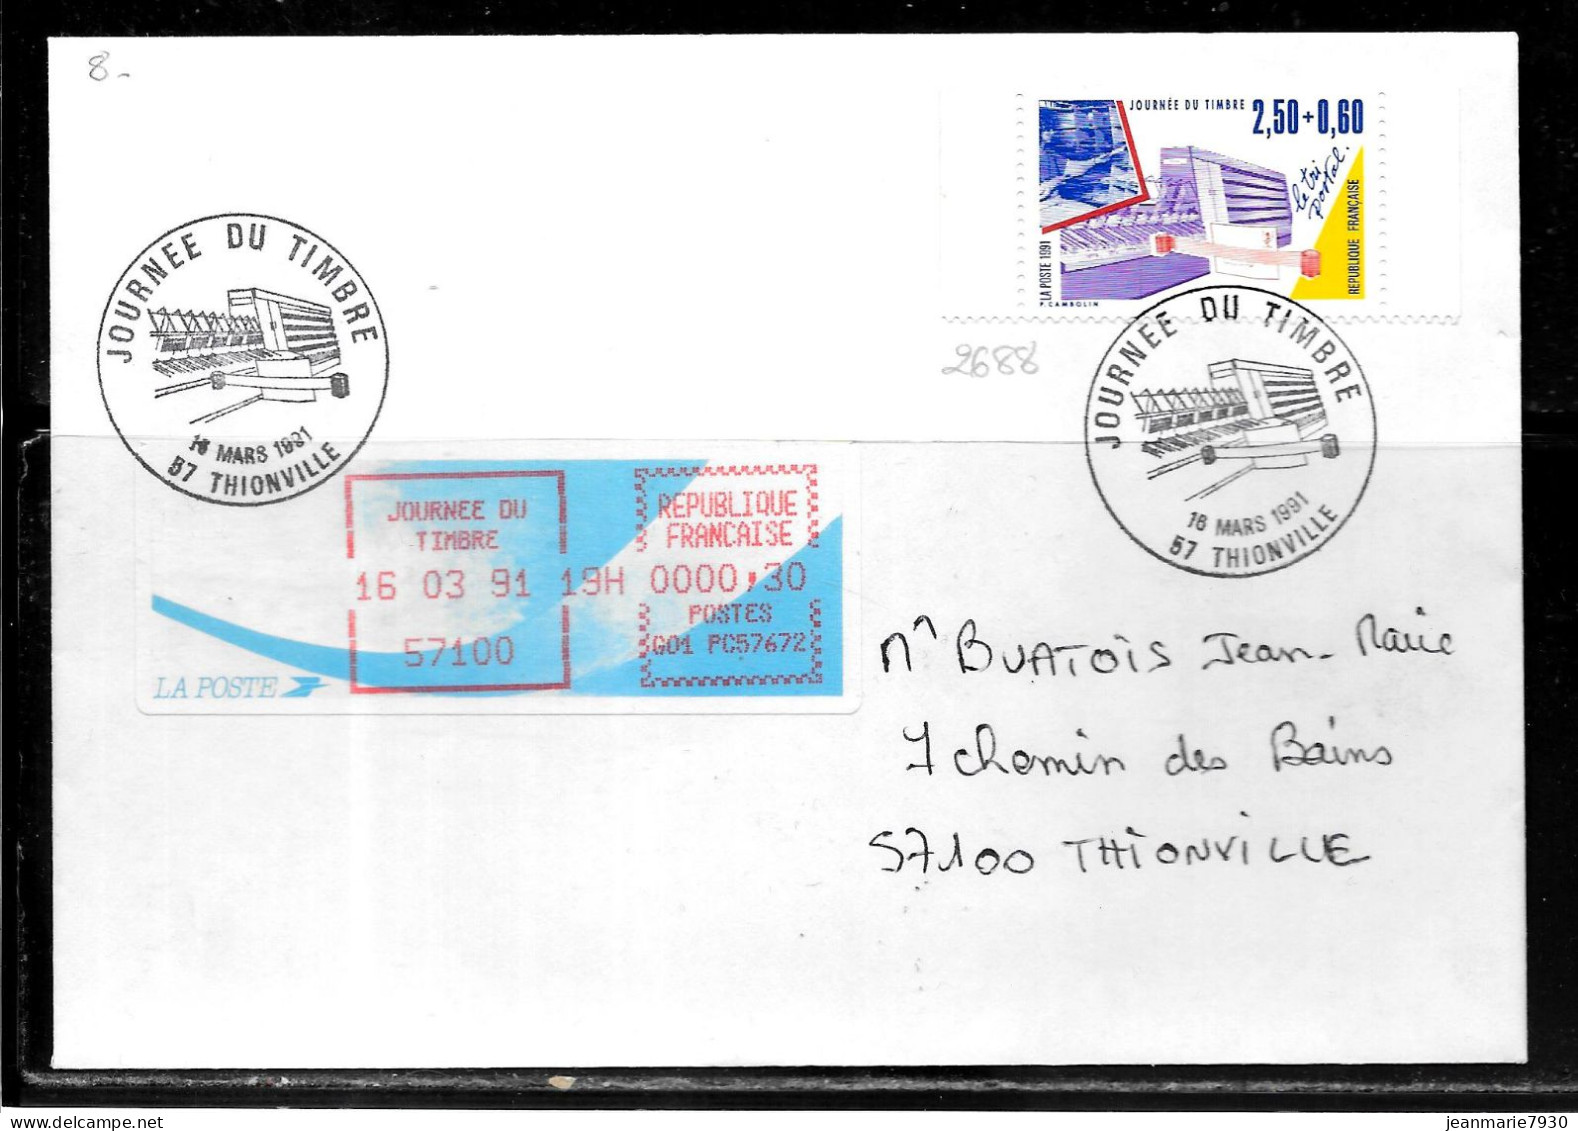 K182 - N° 2688 SUR LETTRE DE THIONVILLE DU 16/03/91 - JOURNEE DU TIMBRE - VIGNETTE D'AFFRANCHISSEMENT - Commemorative Postmarks